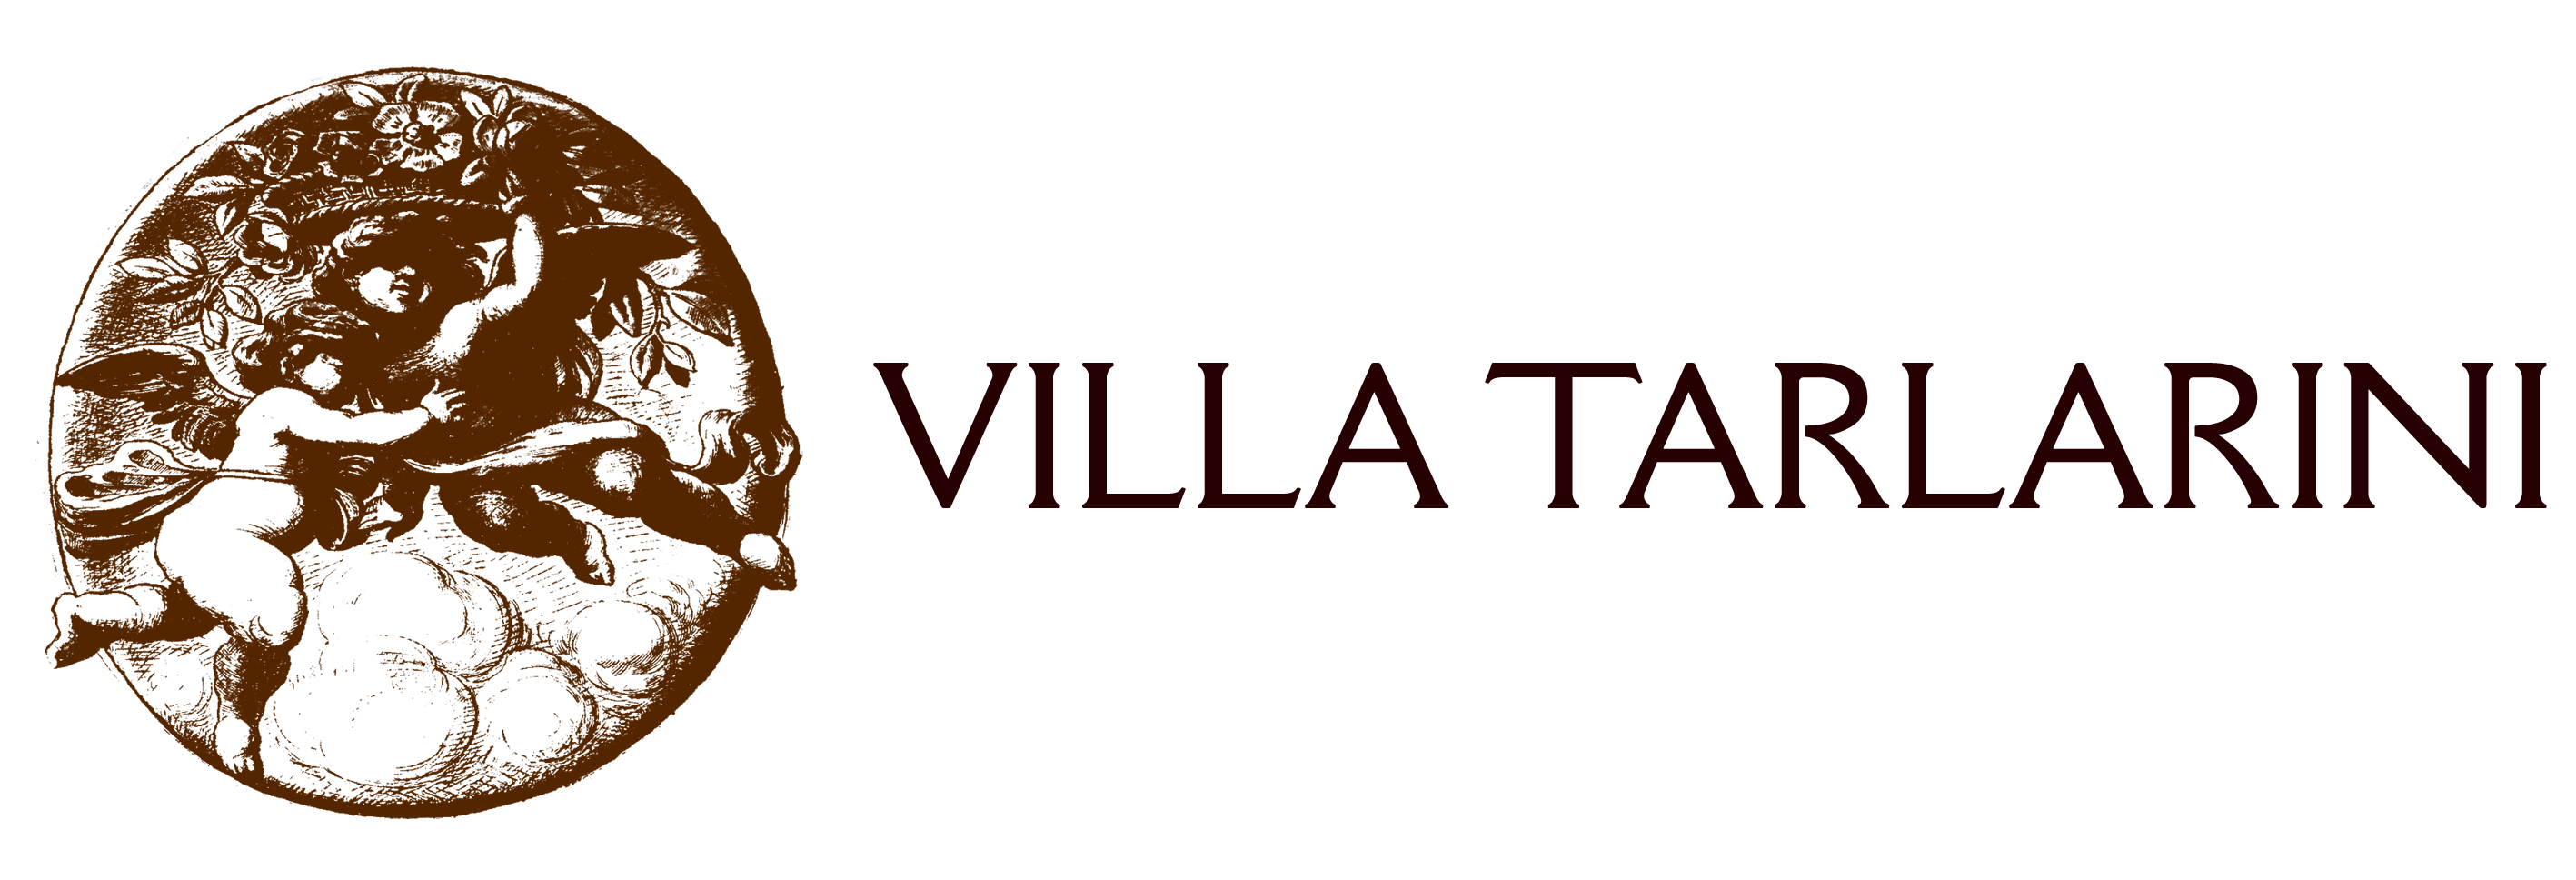 Villa Tarlarini